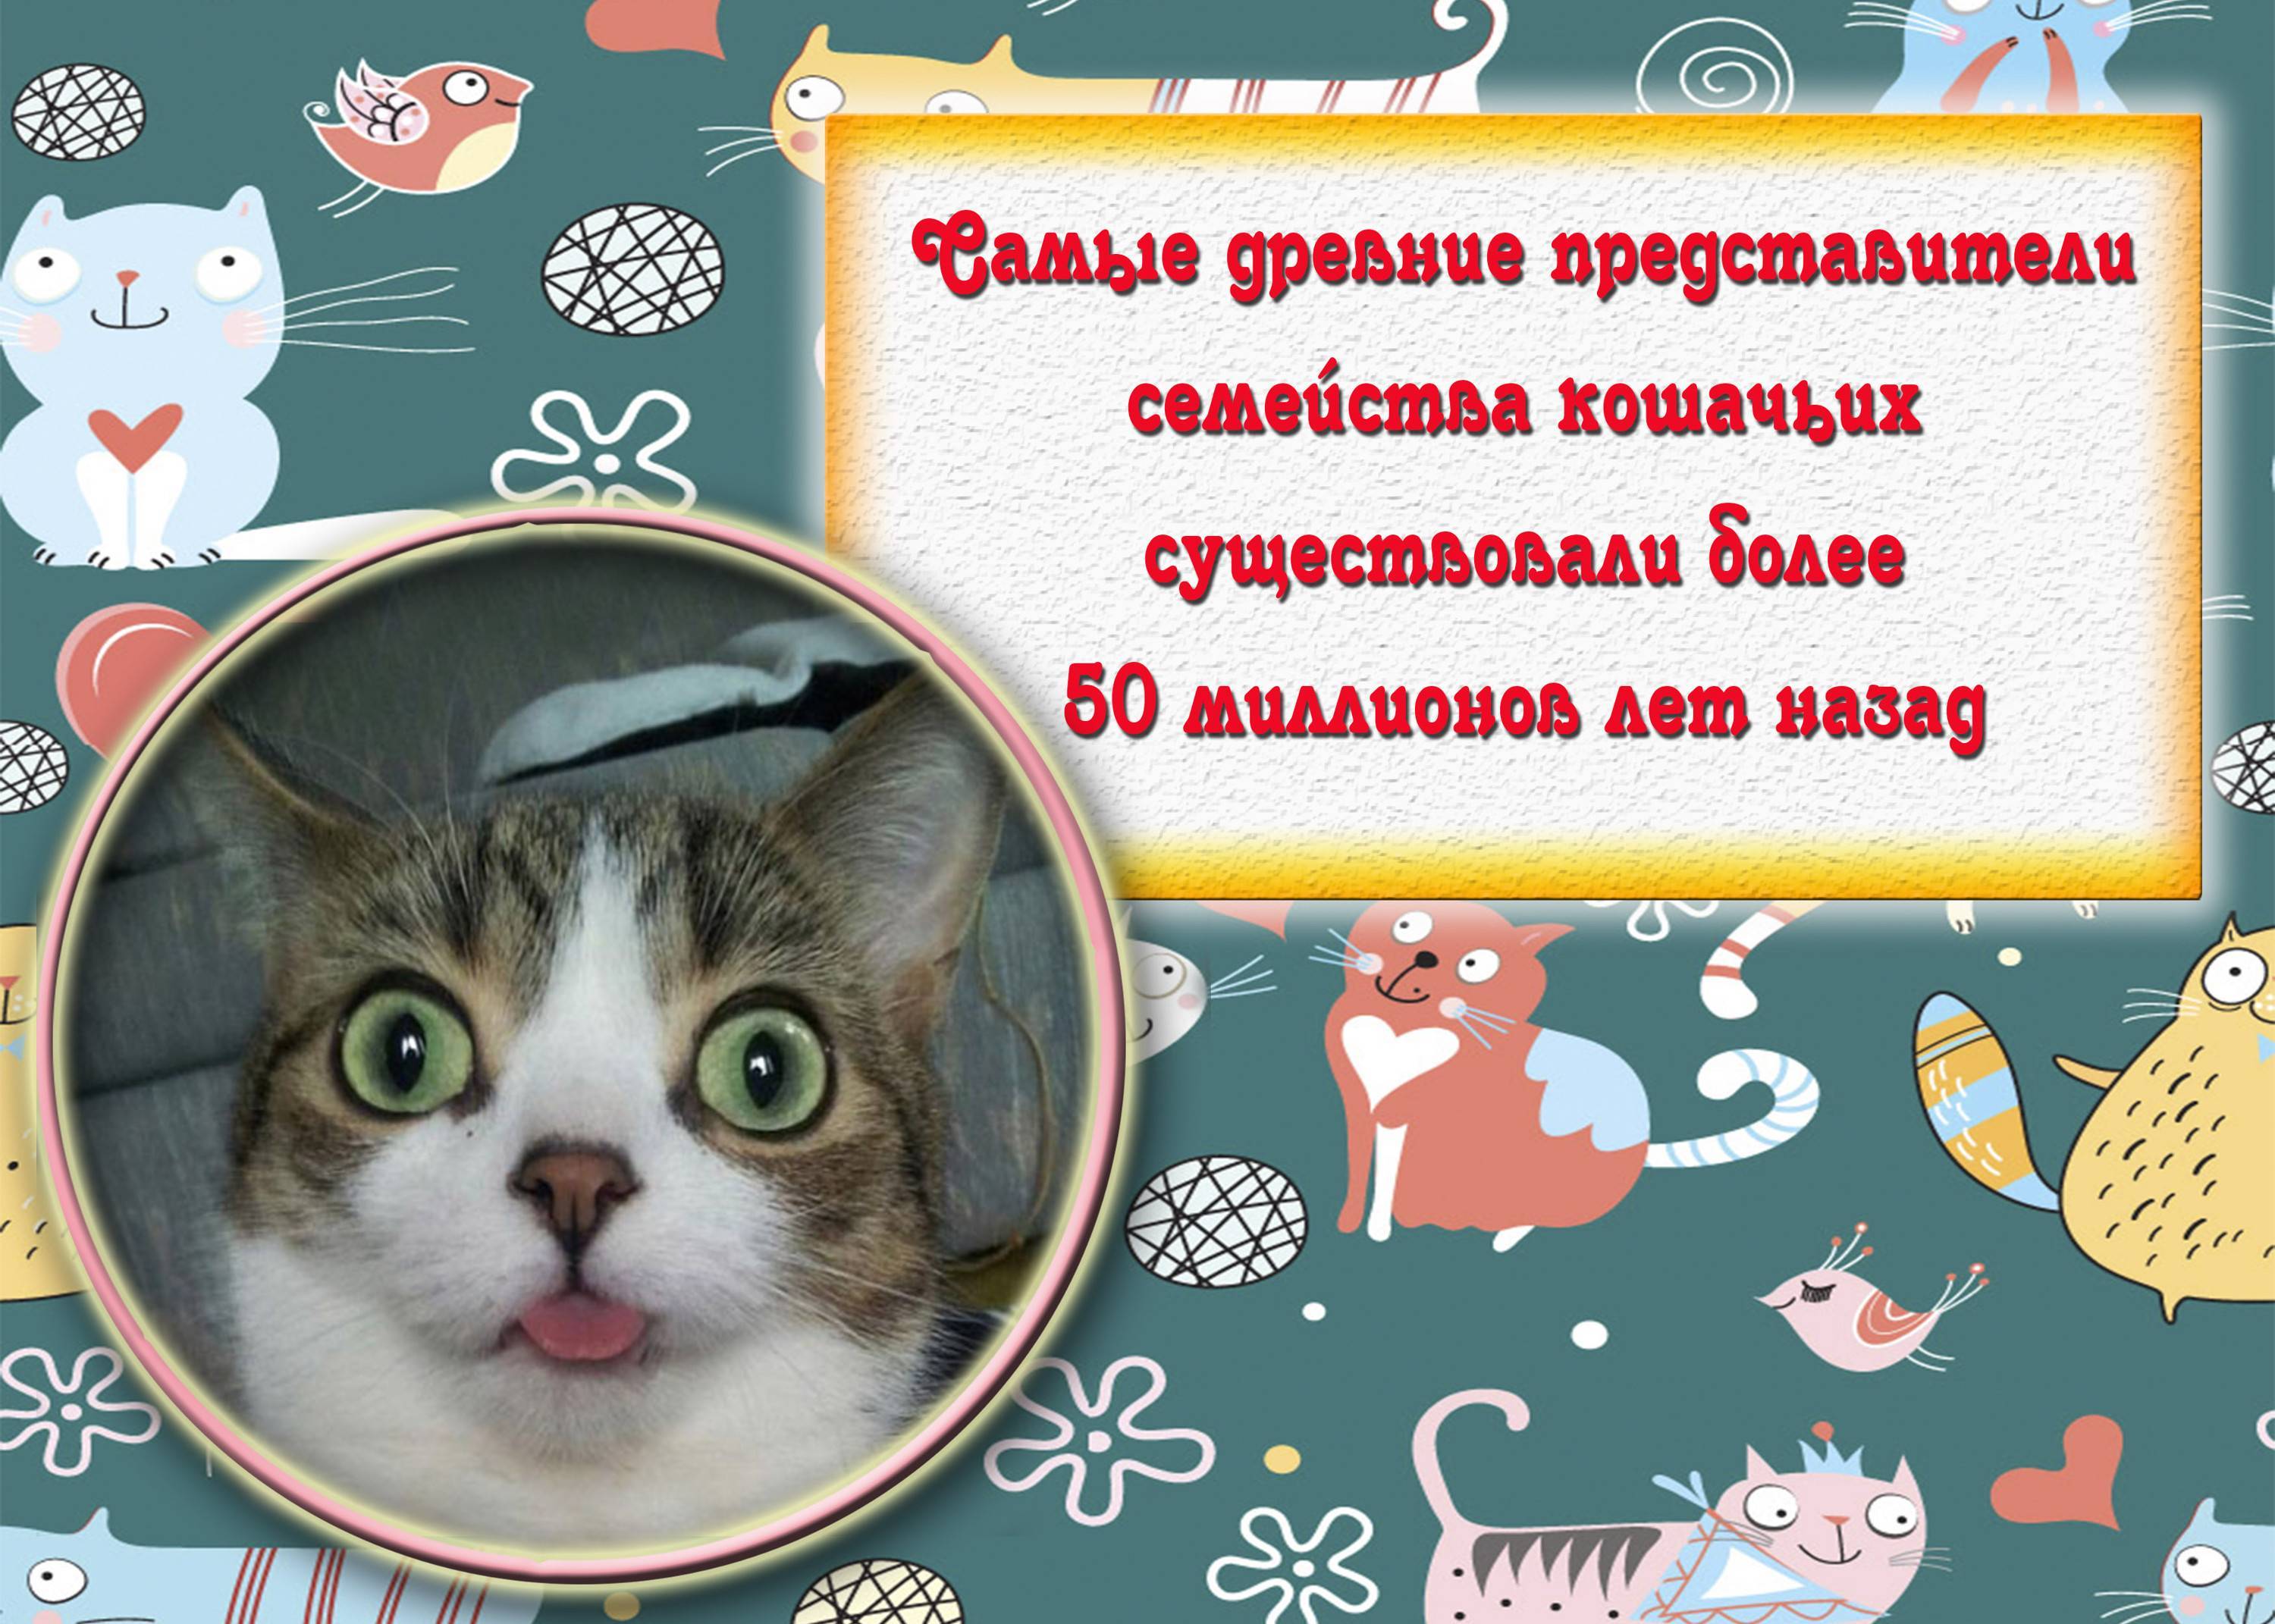 Интересные факты о кошках. 50 интересных фактов о кошках. | интересные факты